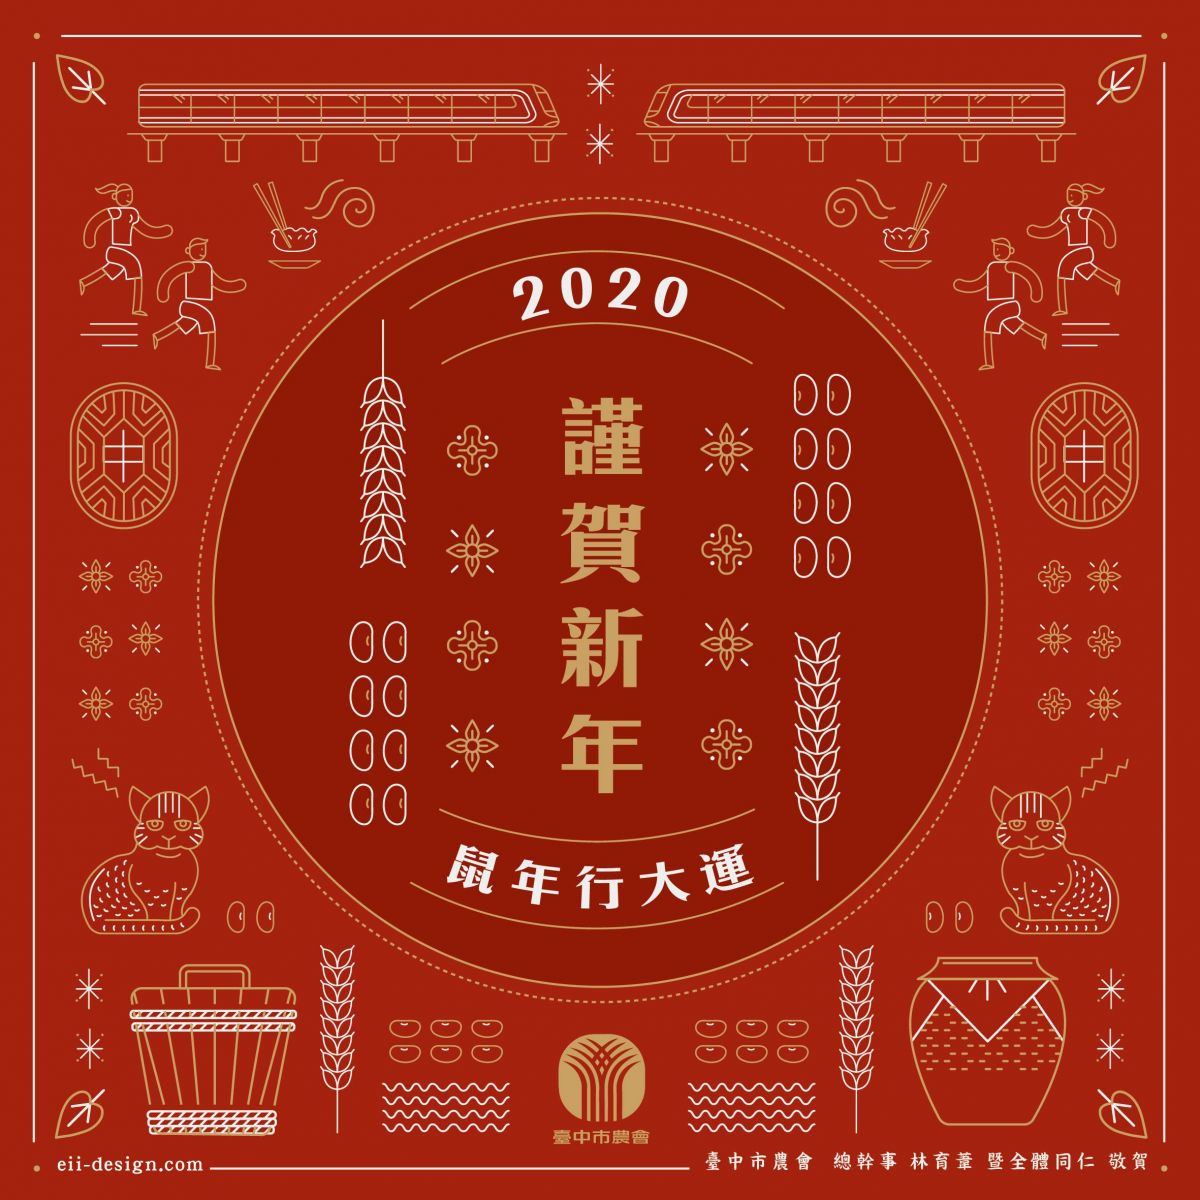 元創力，2020，新年賀卡，平面設計，品牌包裝，臺中市農會